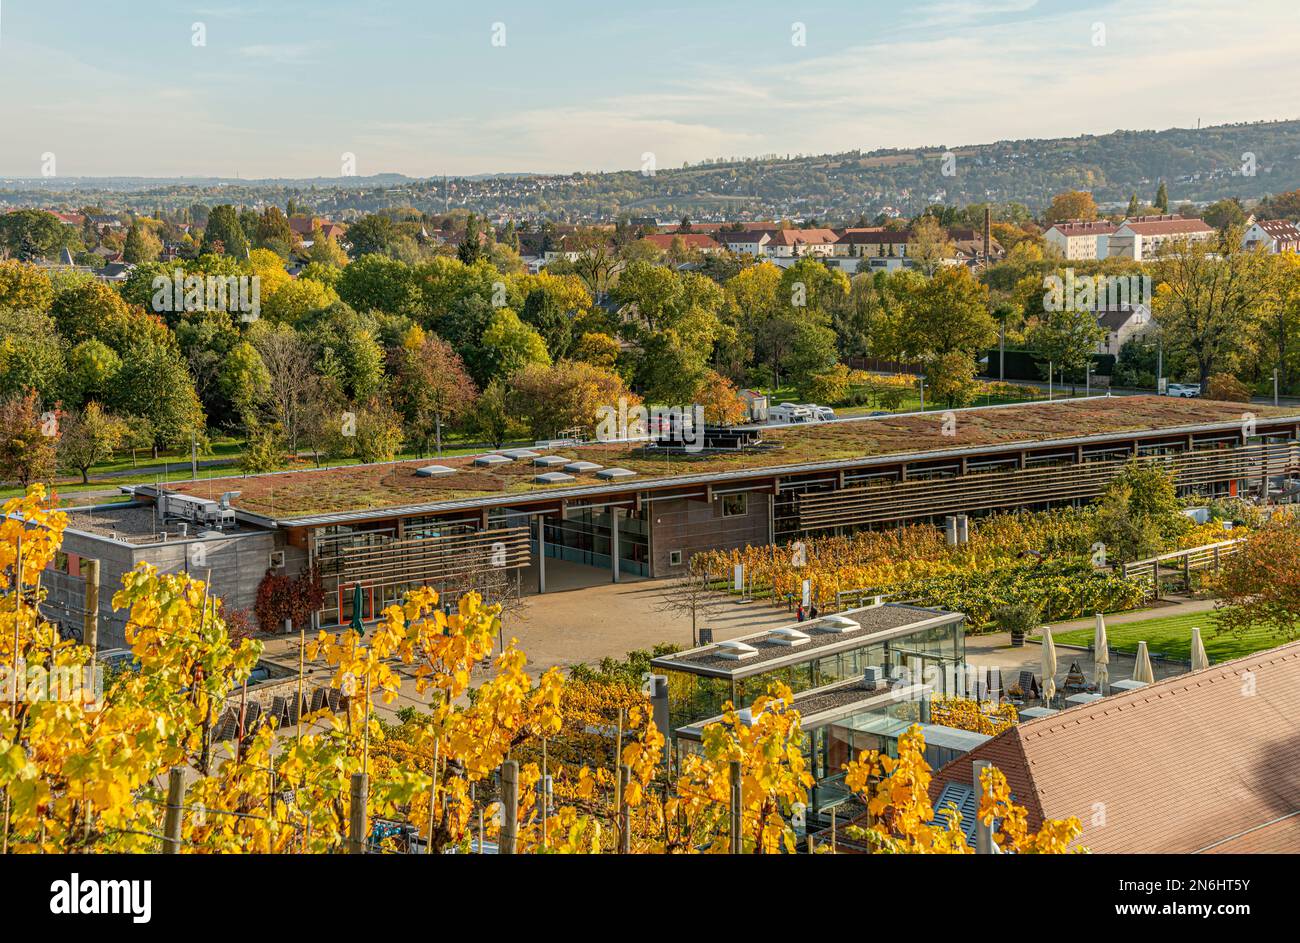 Salle de vente du vignoble saxon Schloss Wackerbarth à Radebeul près de Dresde, Saxe, Allemagne Banque D'Images